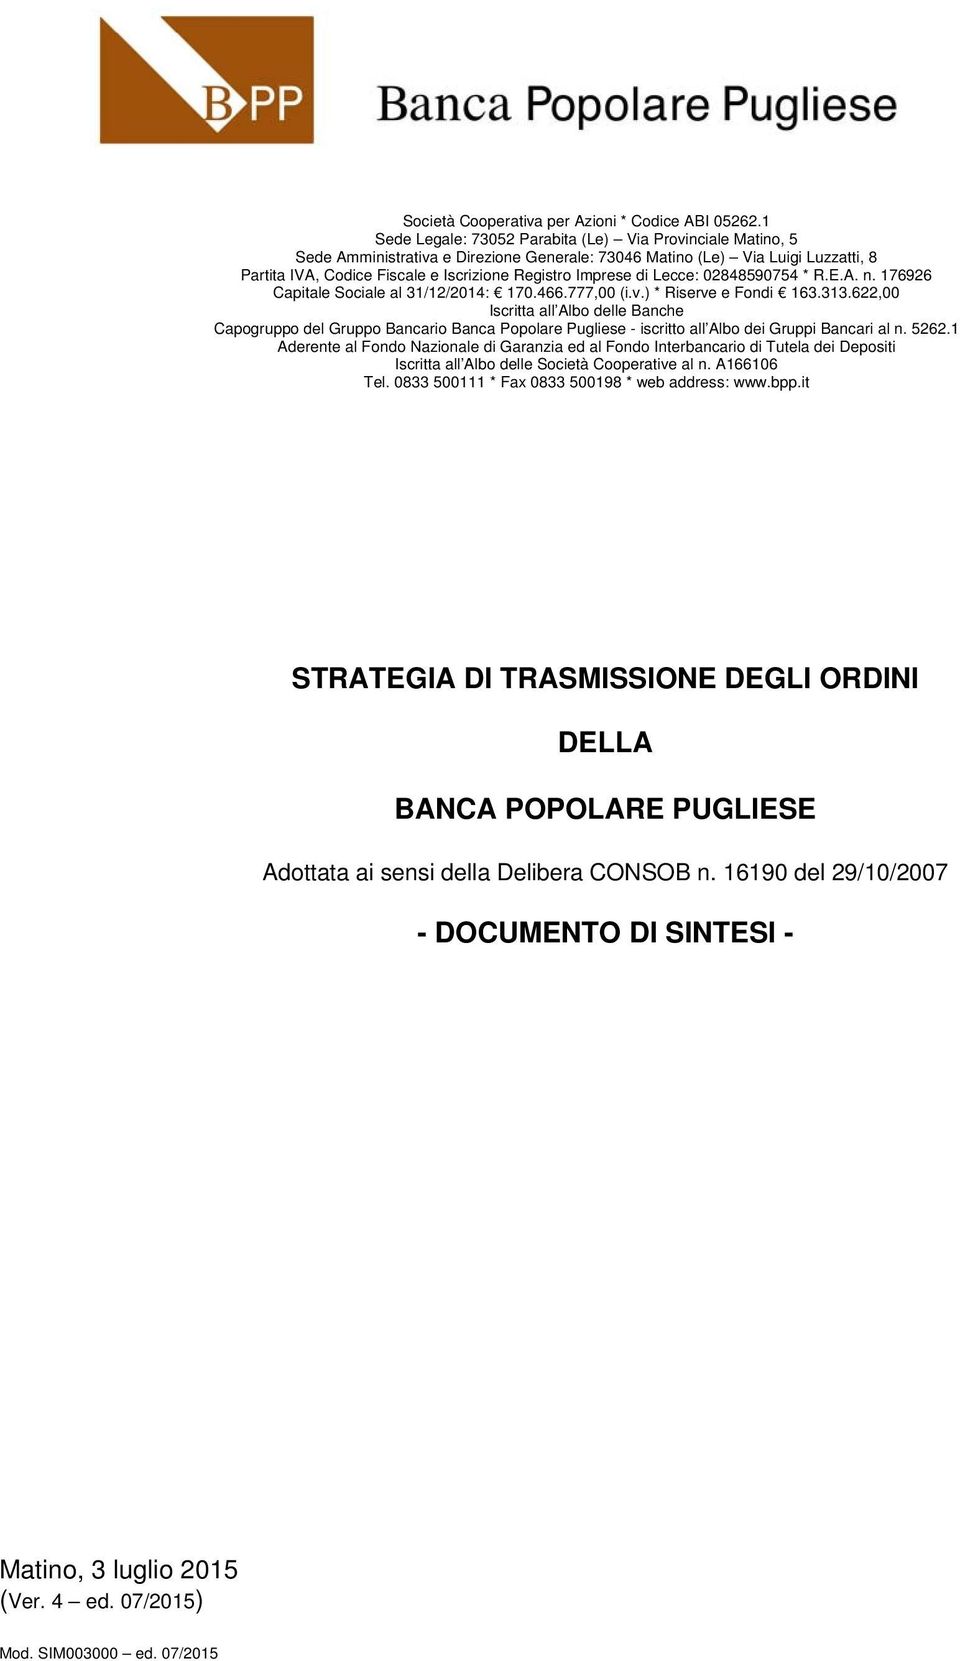 Imprese di Lecce: 02848590754 * R.E.A. n. 176926 Capitale Sociale al 31/12/2014: 170.466.777,00 (i.v.) * Riserve e Fondi 163.313.